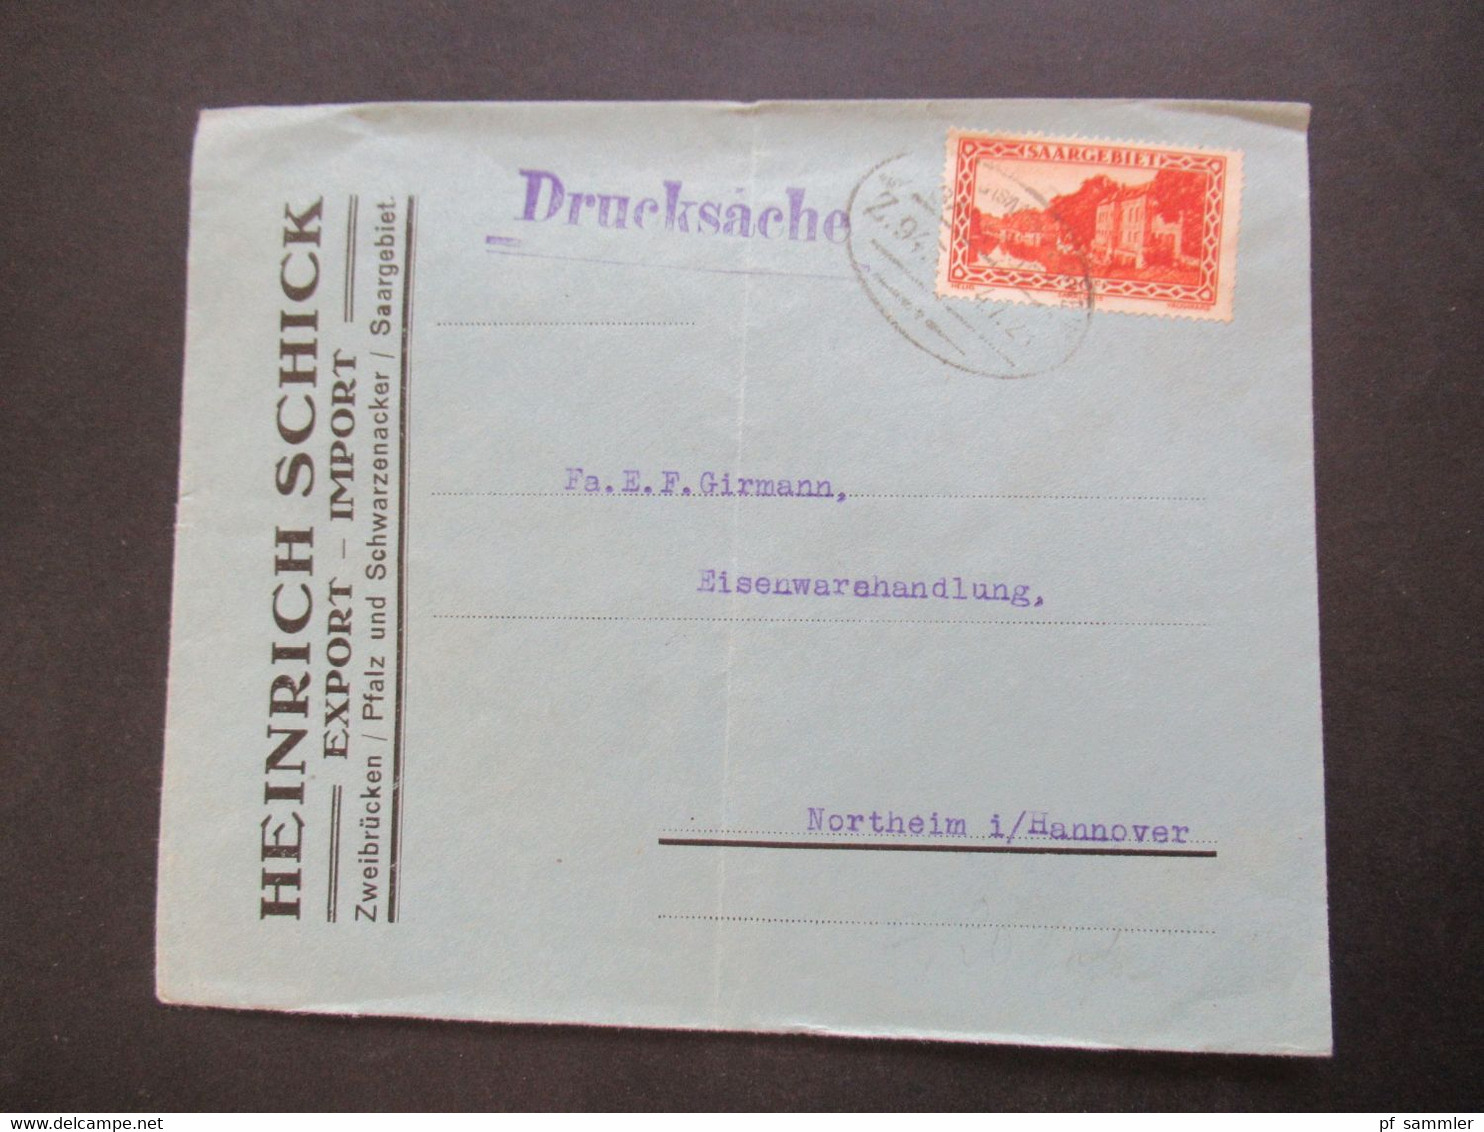 Saargebiet 1923 Drucksache Firmenumschlag Heinrich Schick Export - Import Zweibrücken / Pfalz Und Schwarzenacker - Briefe U. Dokumente